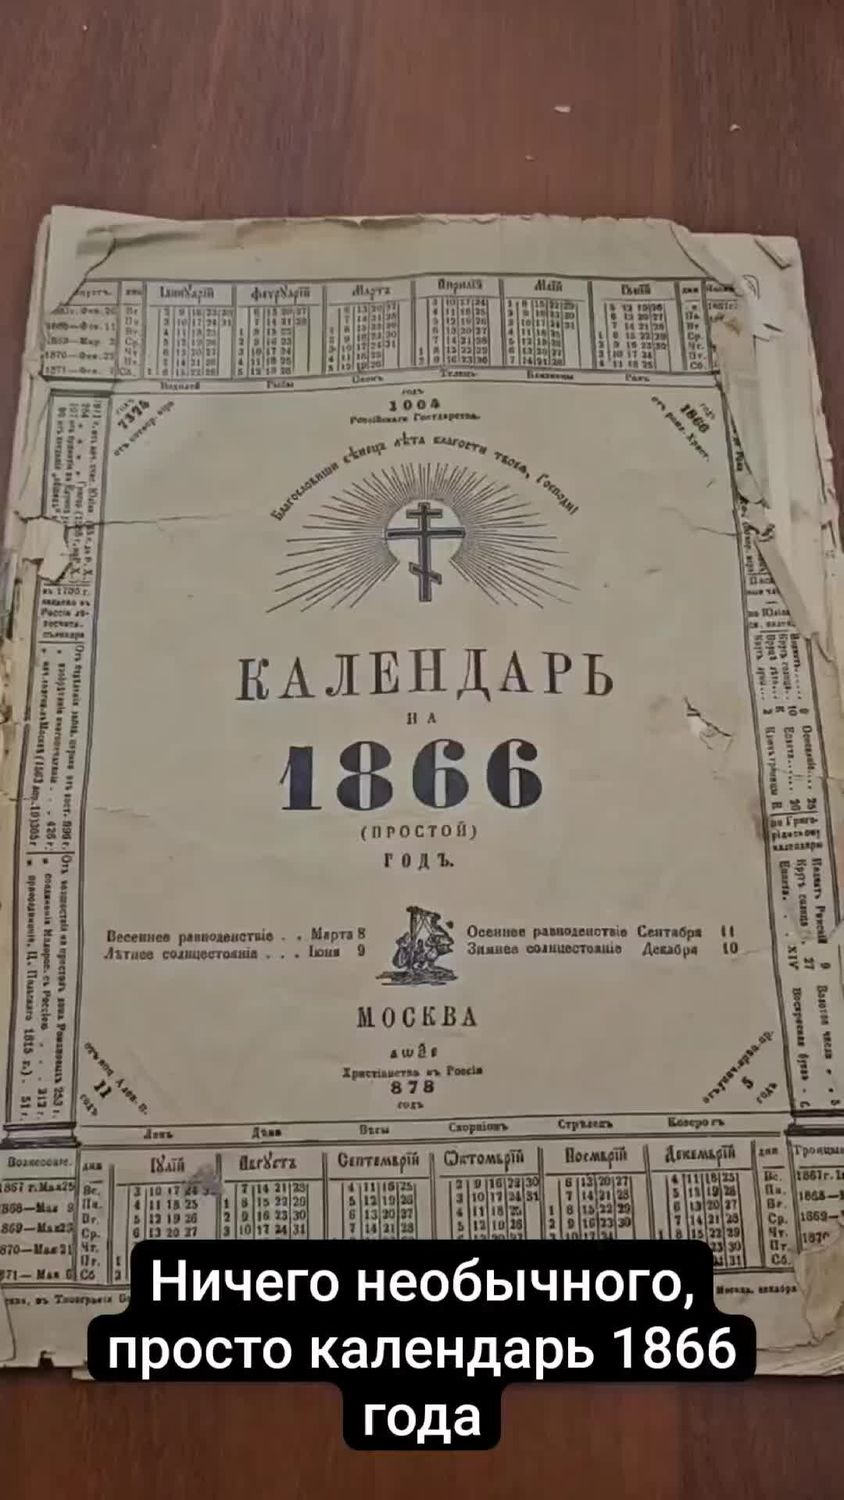 Ничего необычного, просто календарь 1866 года